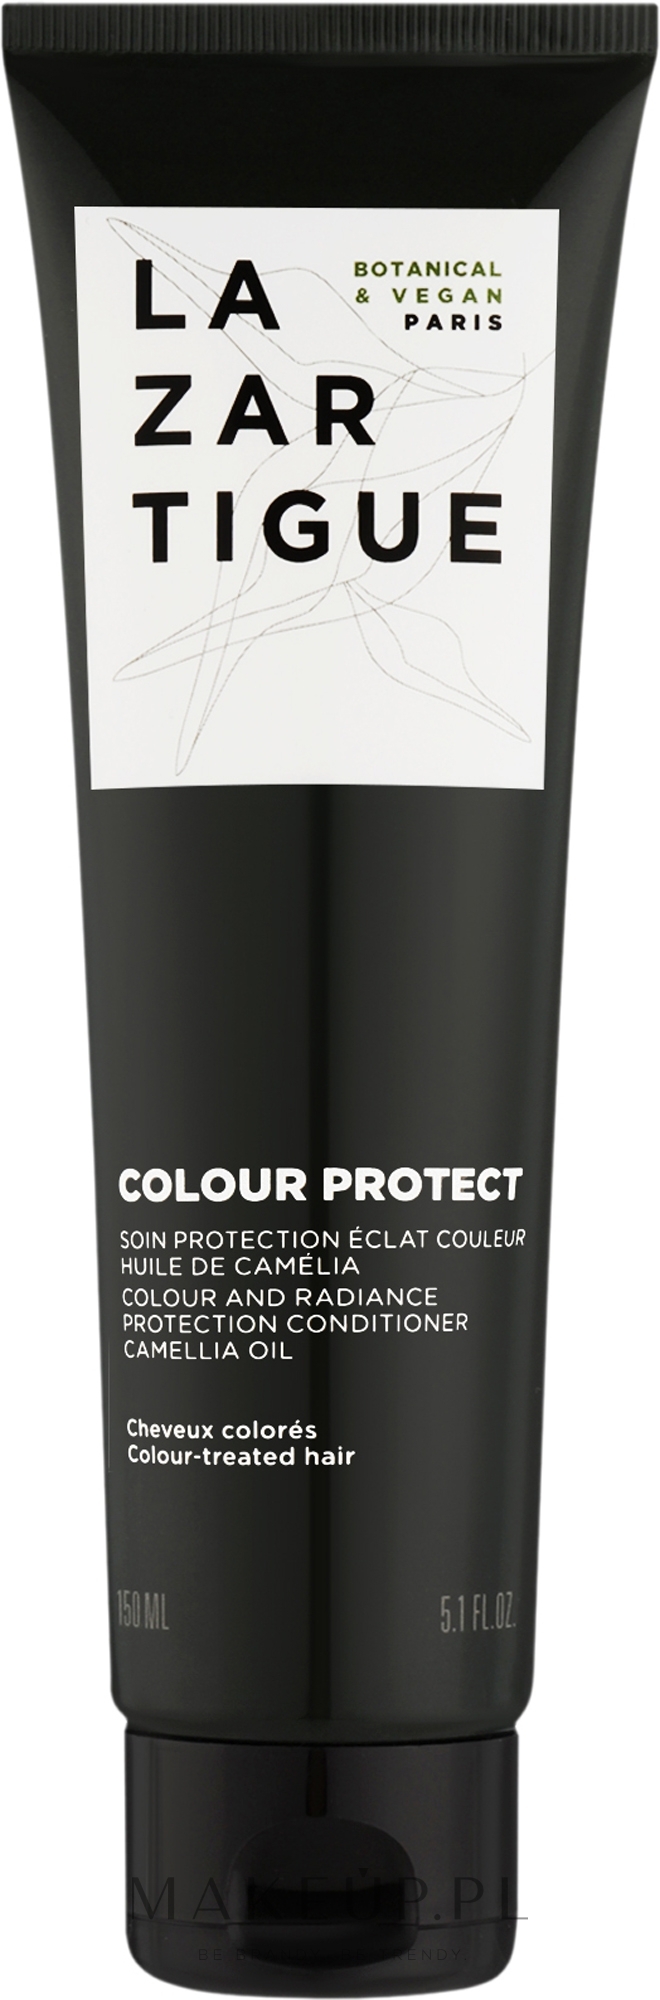 Odżywka chroniąca kolor i połysk włosów - Lazartigue Colour Protect Colour and Radiance Protection Conditioner — Zdjęcie 150 ml